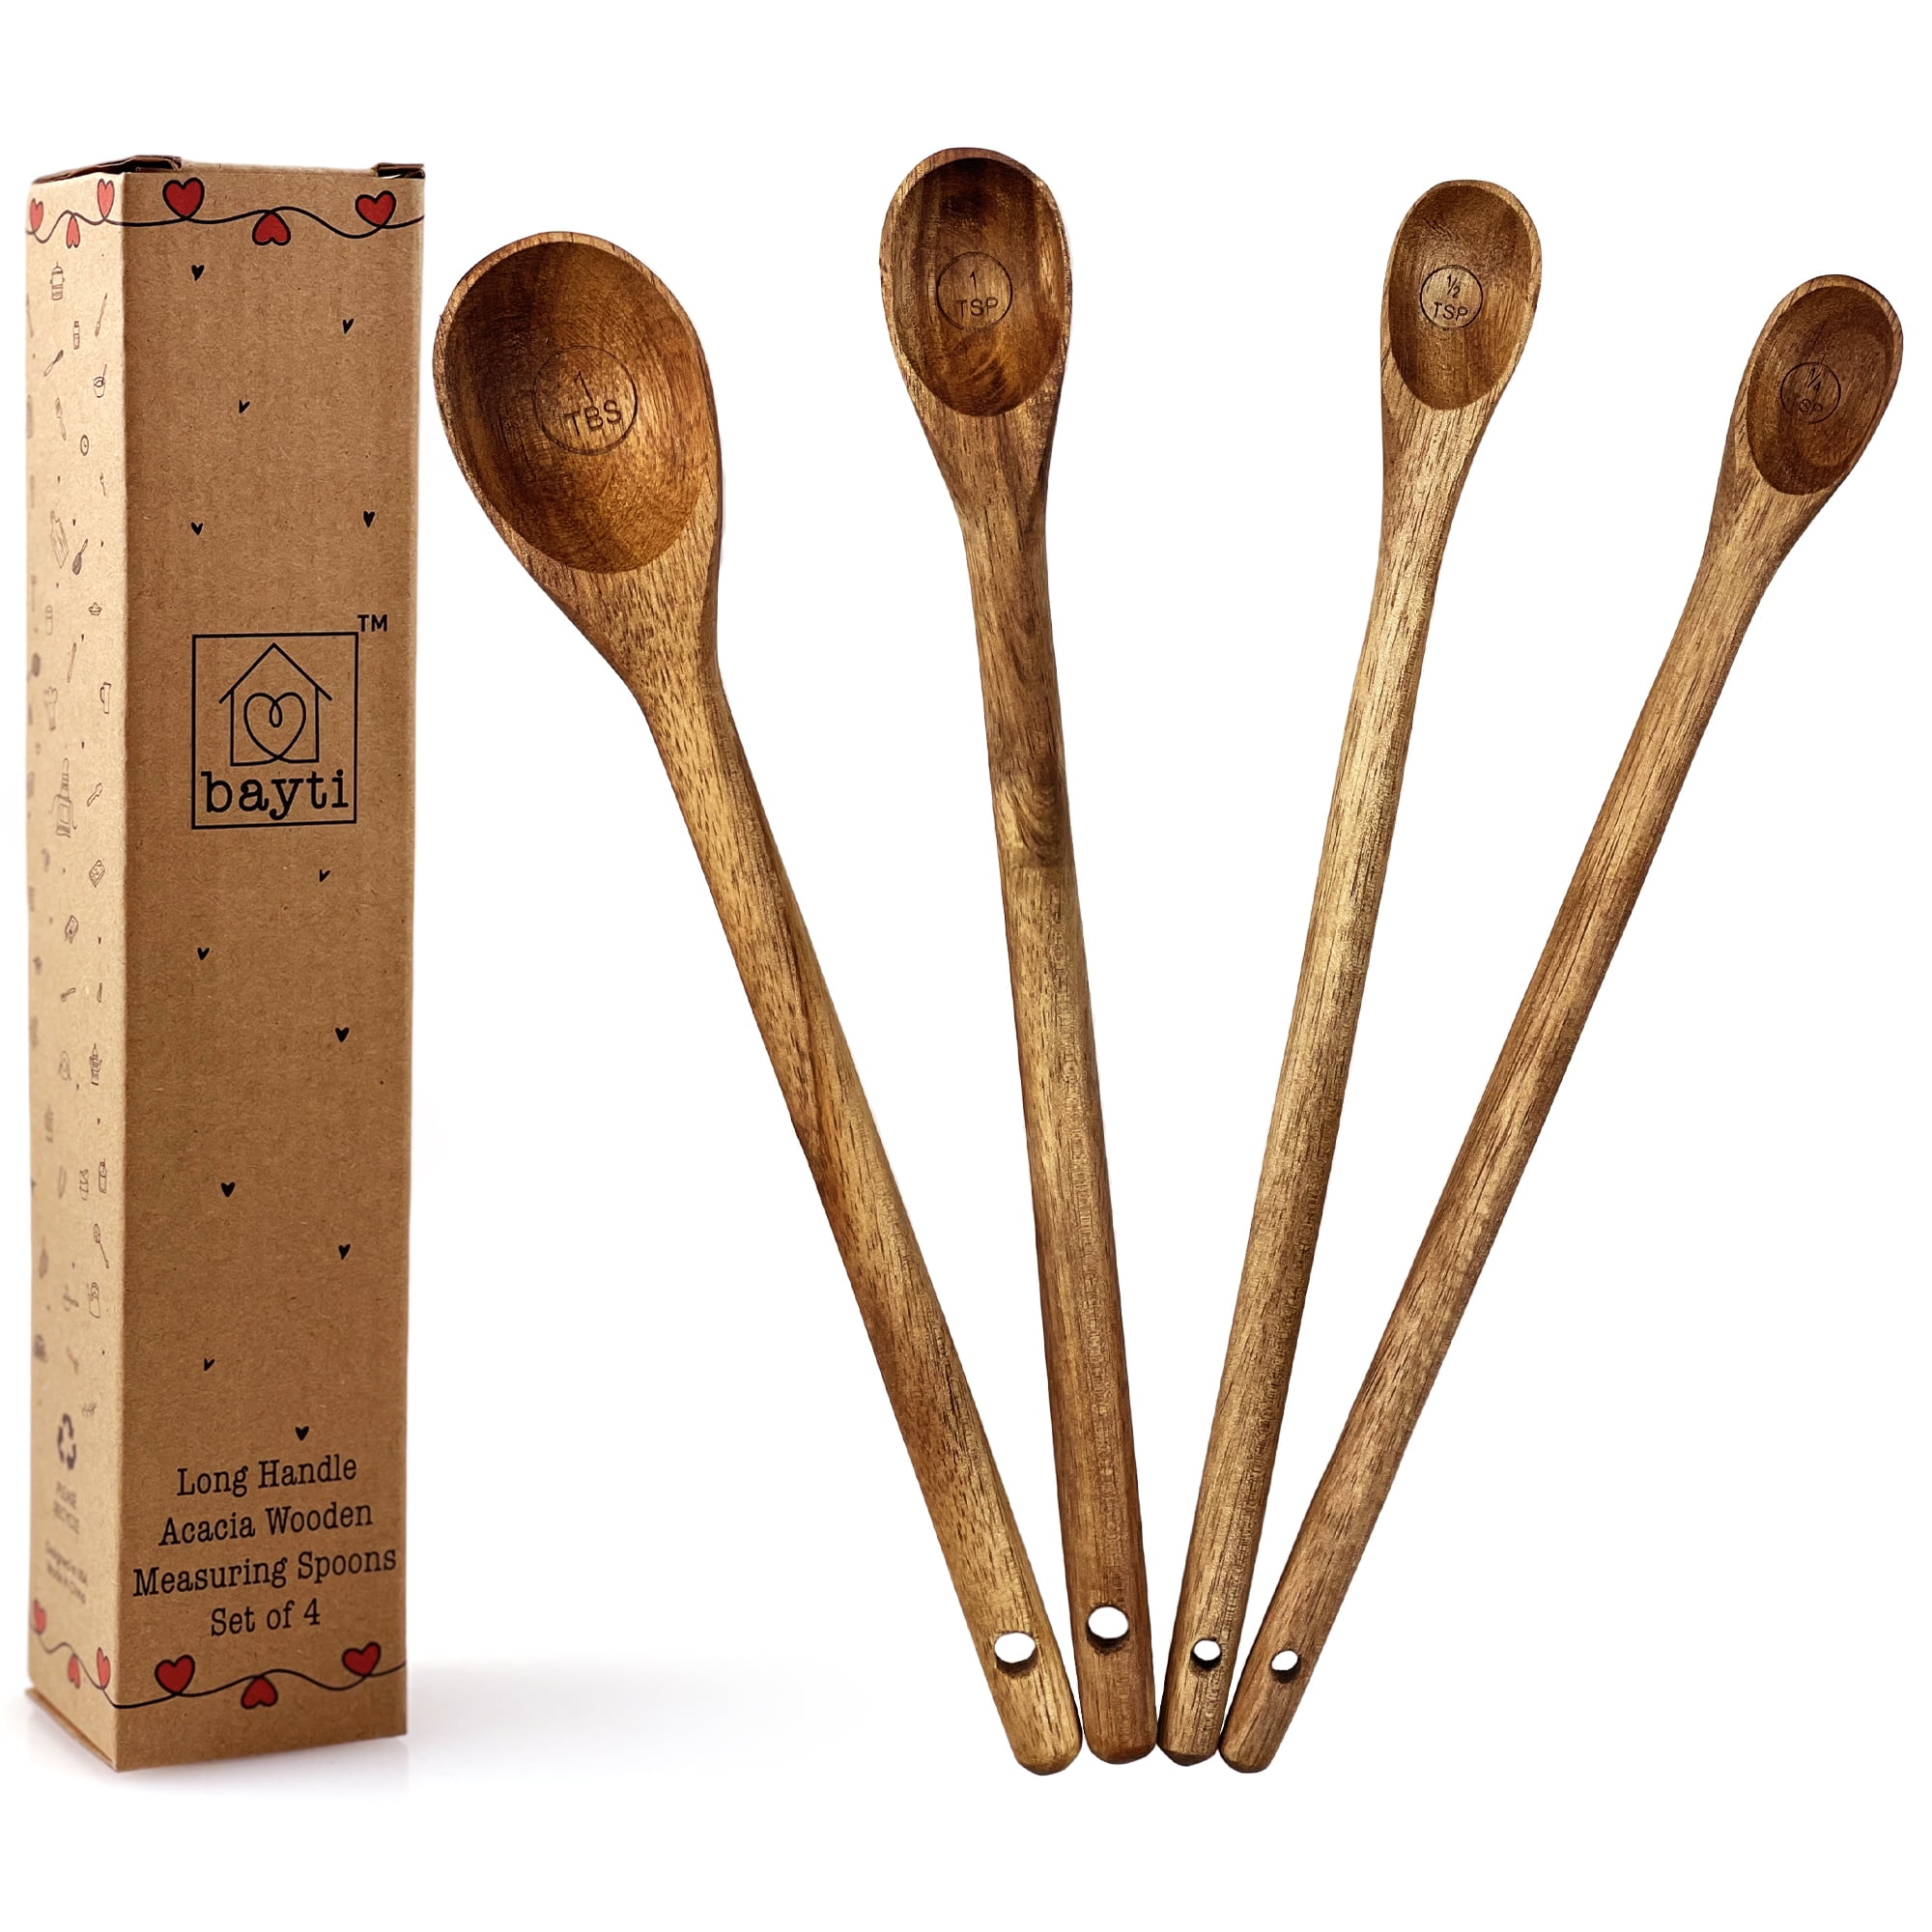 Bayti Long Handle Acacia Wooden Measuring Spoons, 100% Natural Food Grade  Acacia Wood set of 4 spoons 